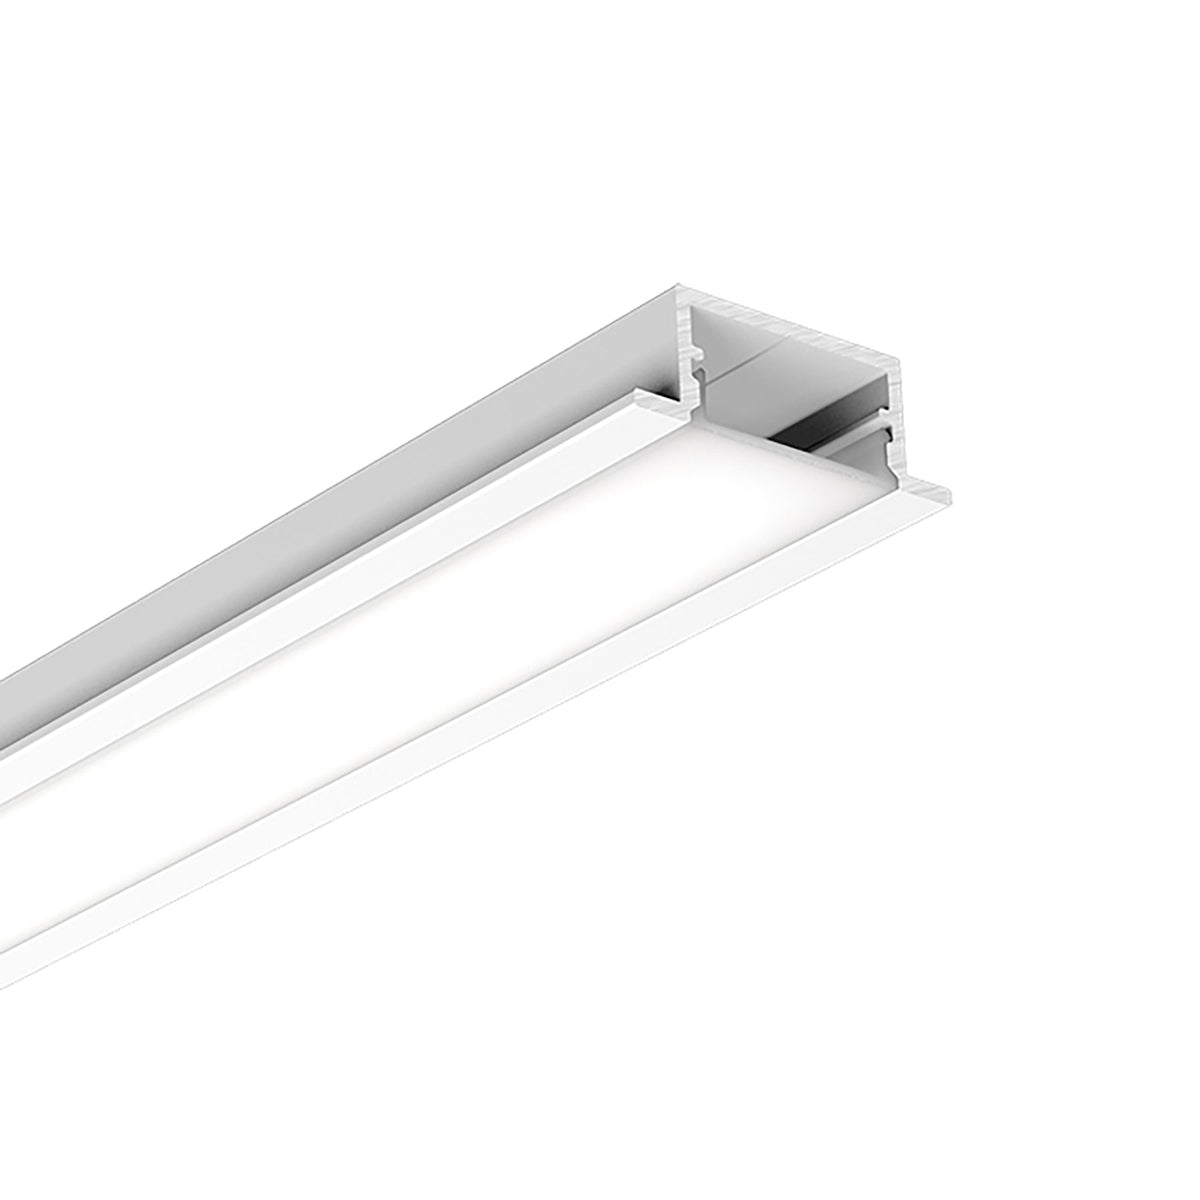 G.W.S. LED LED Aluminium Profile Recessed 335-Y2810